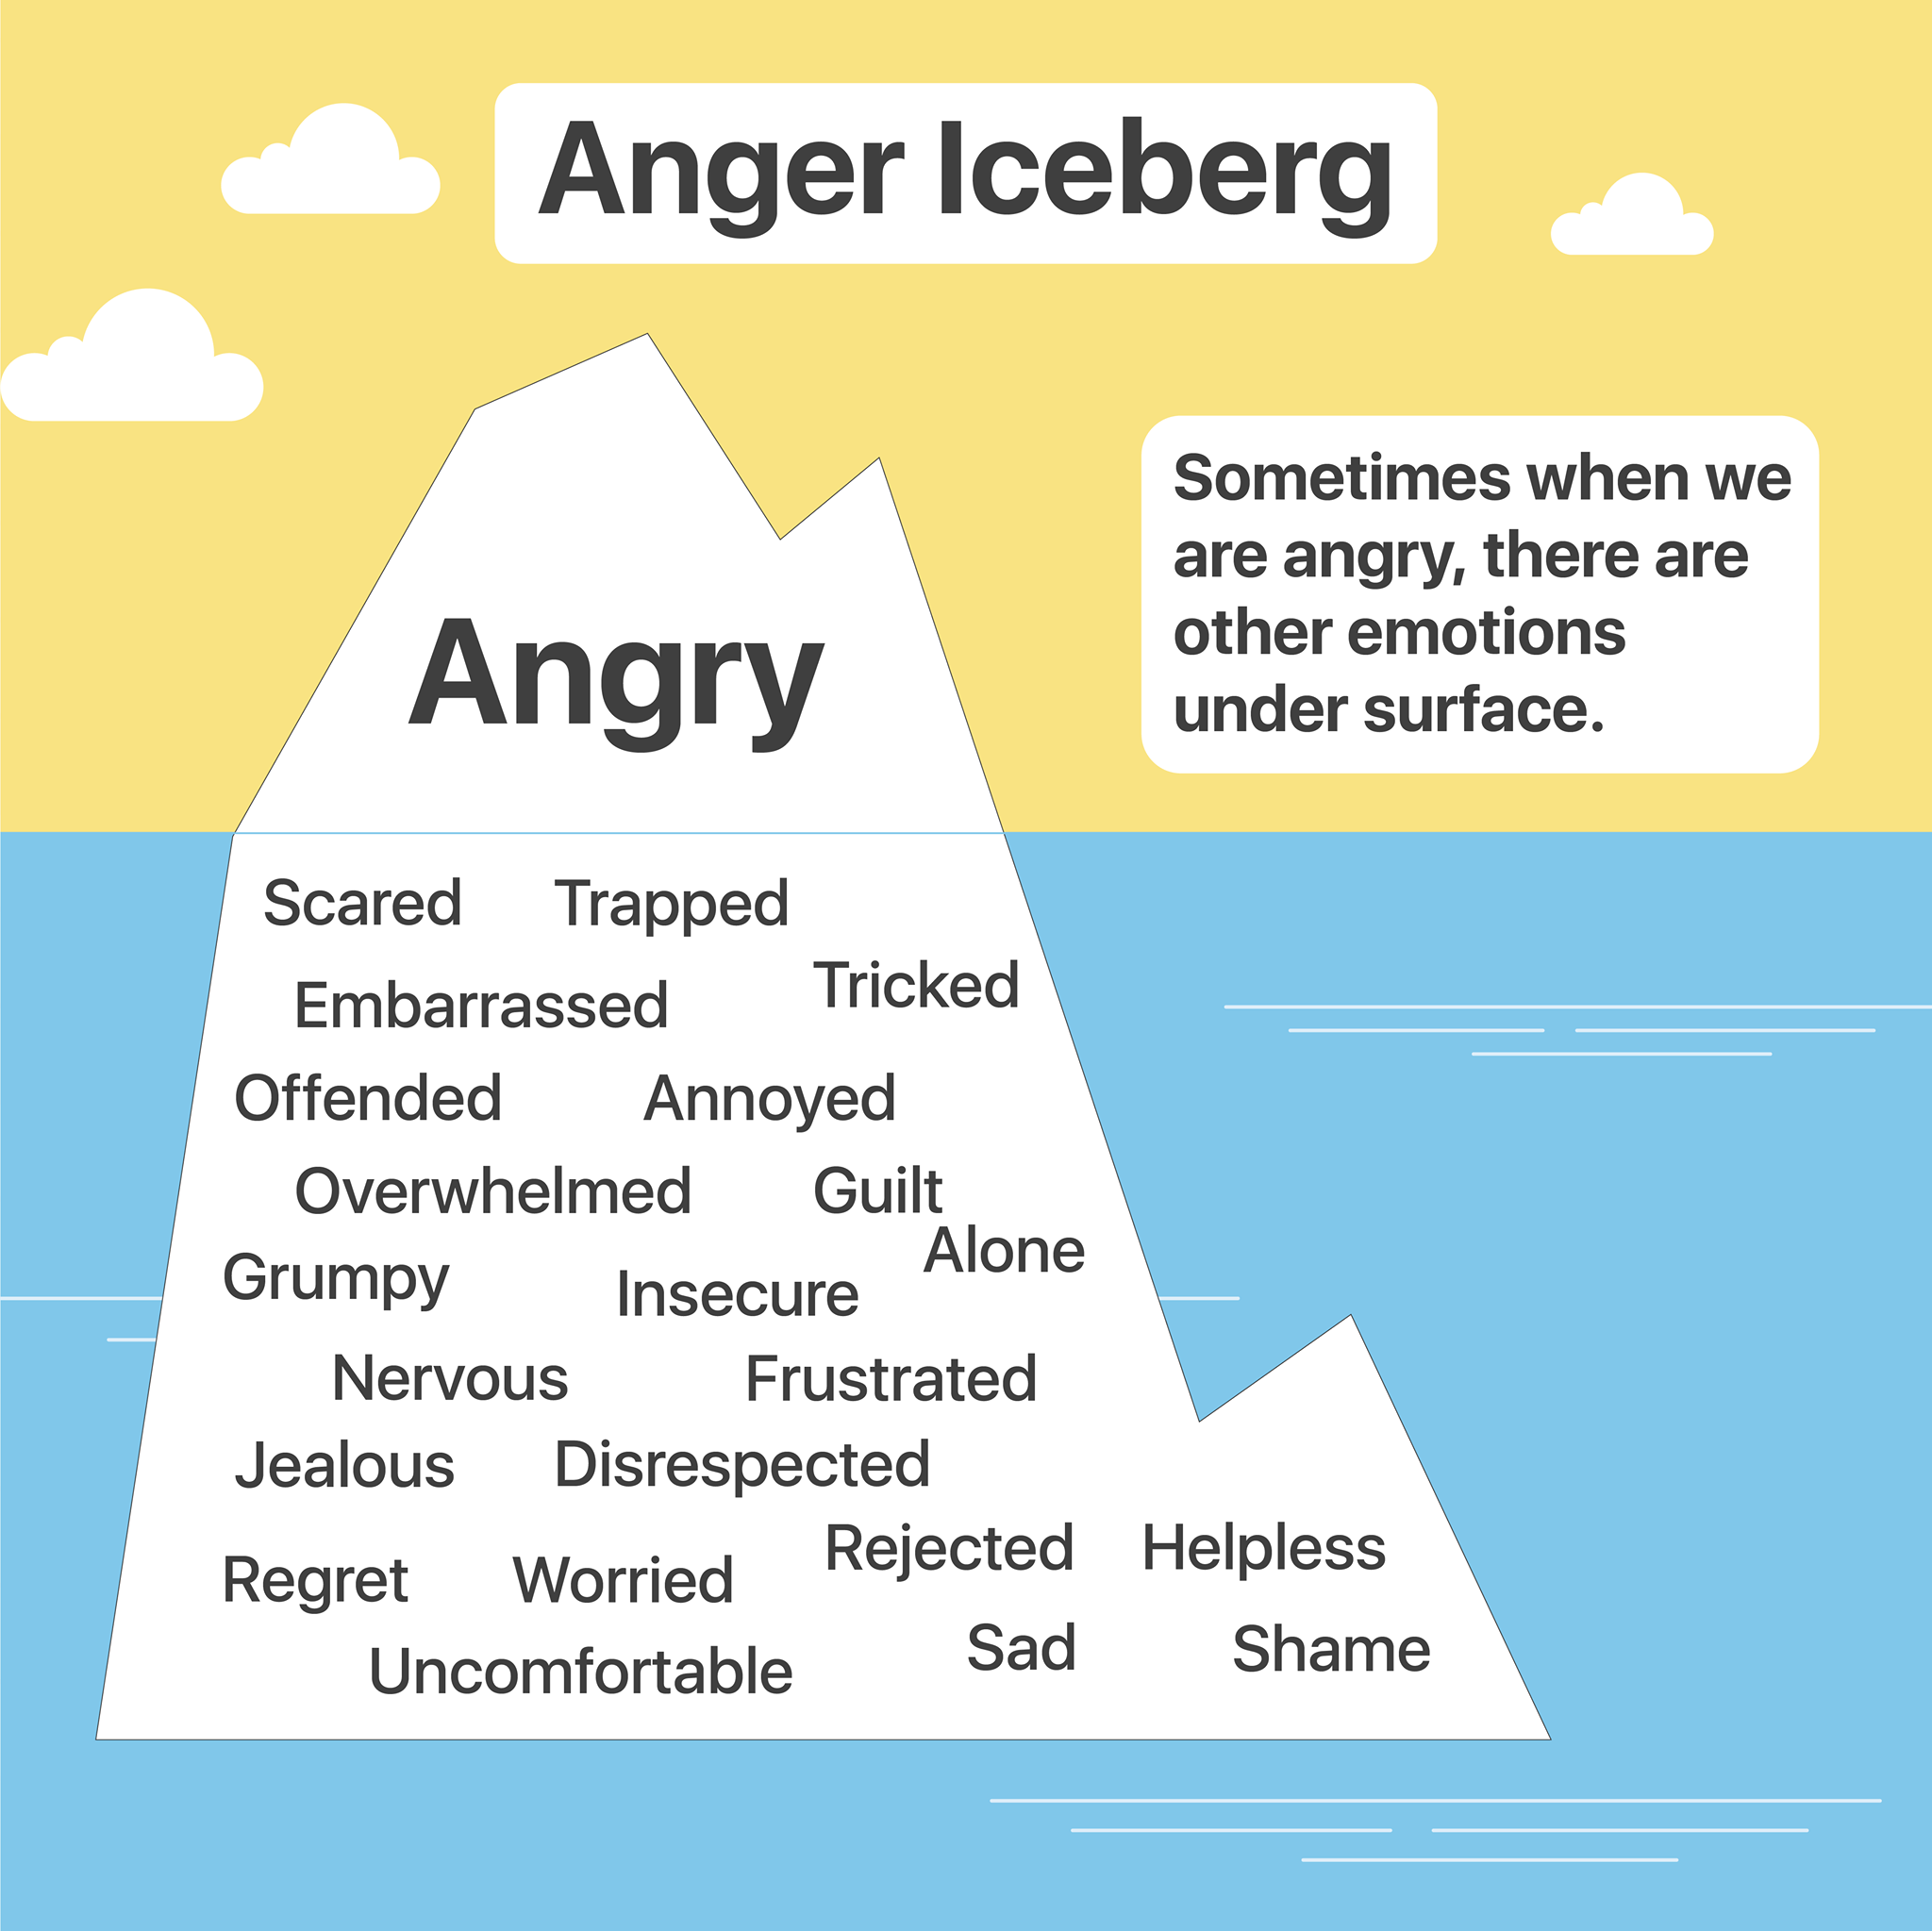 Anger iceberg - lokasinco